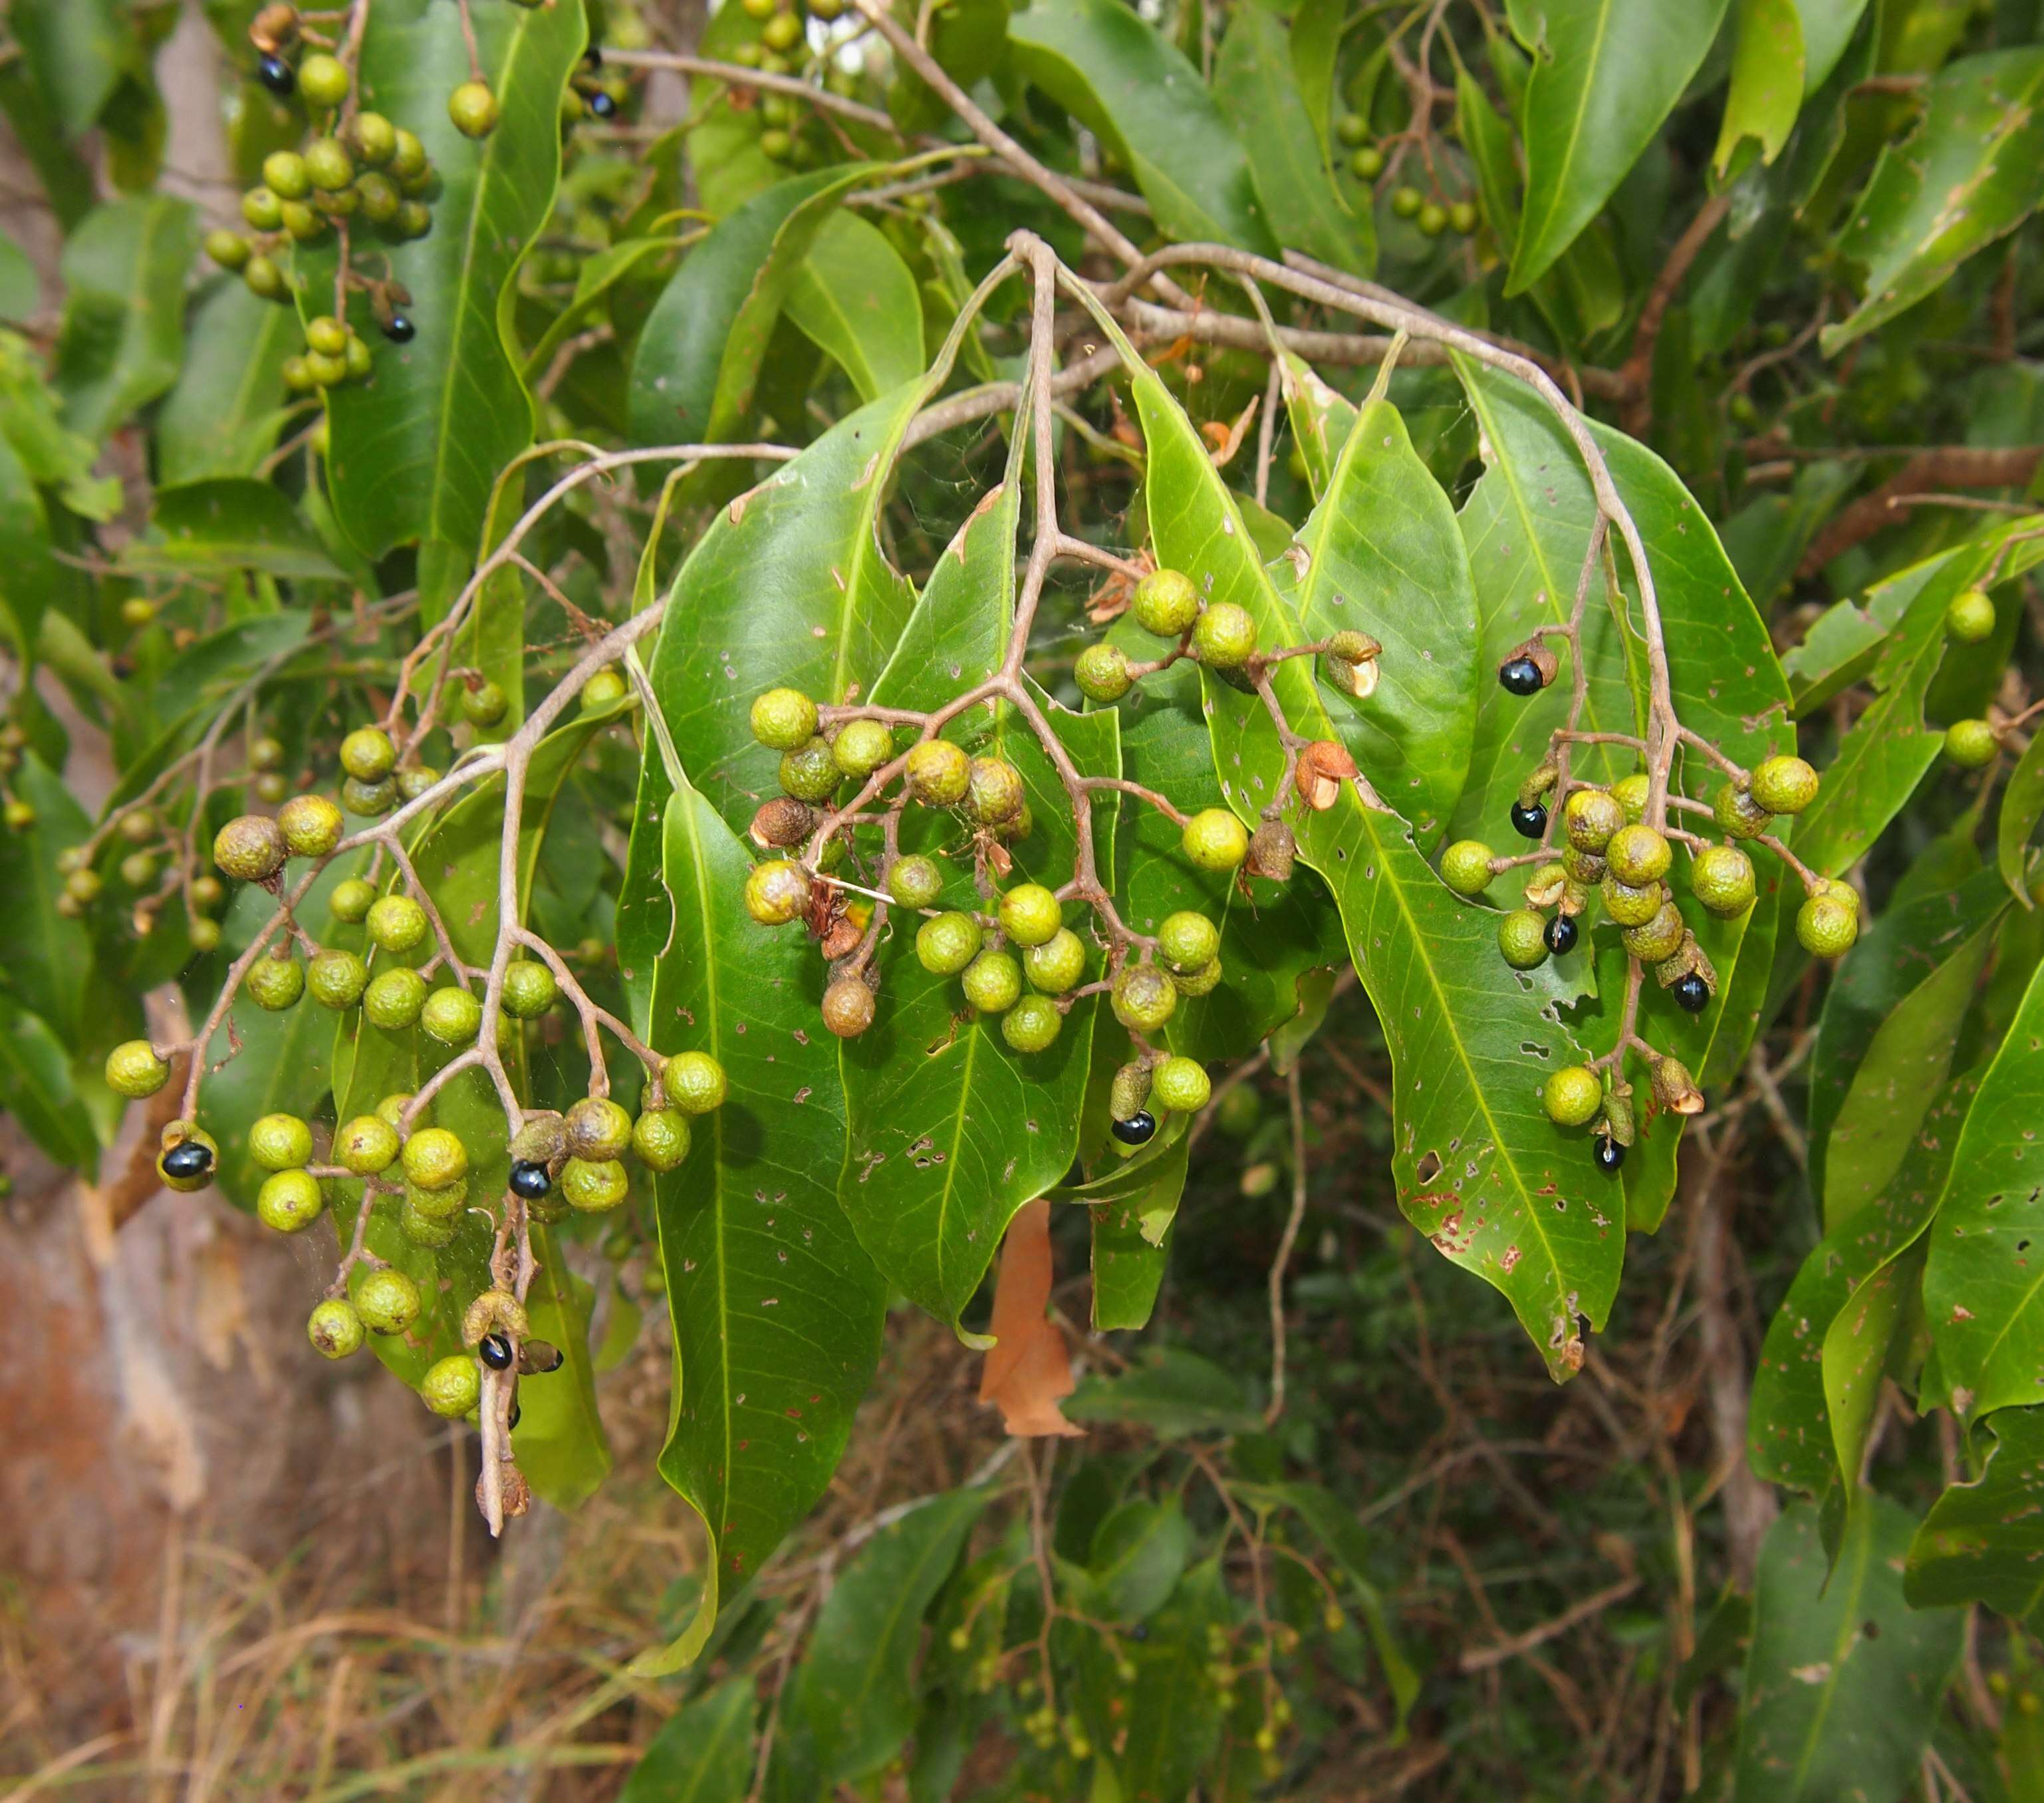 Image of Geijera salicifolia Schott